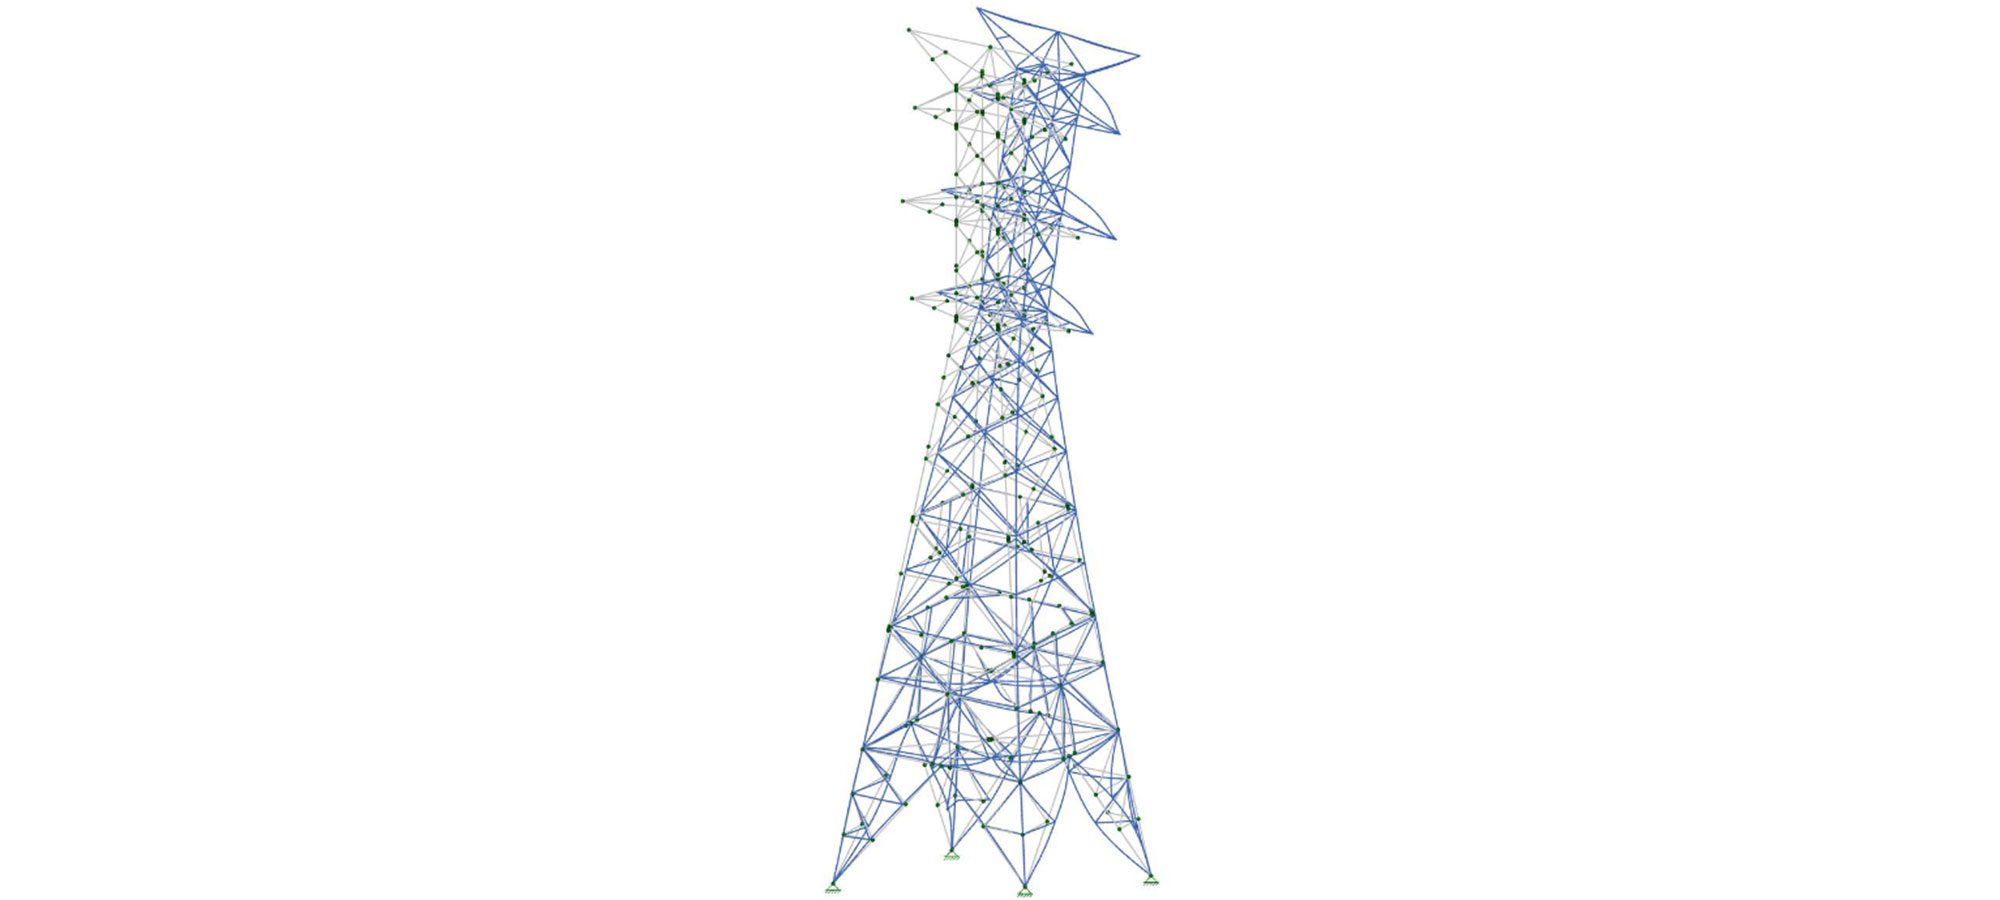 Diagram of powerline tower